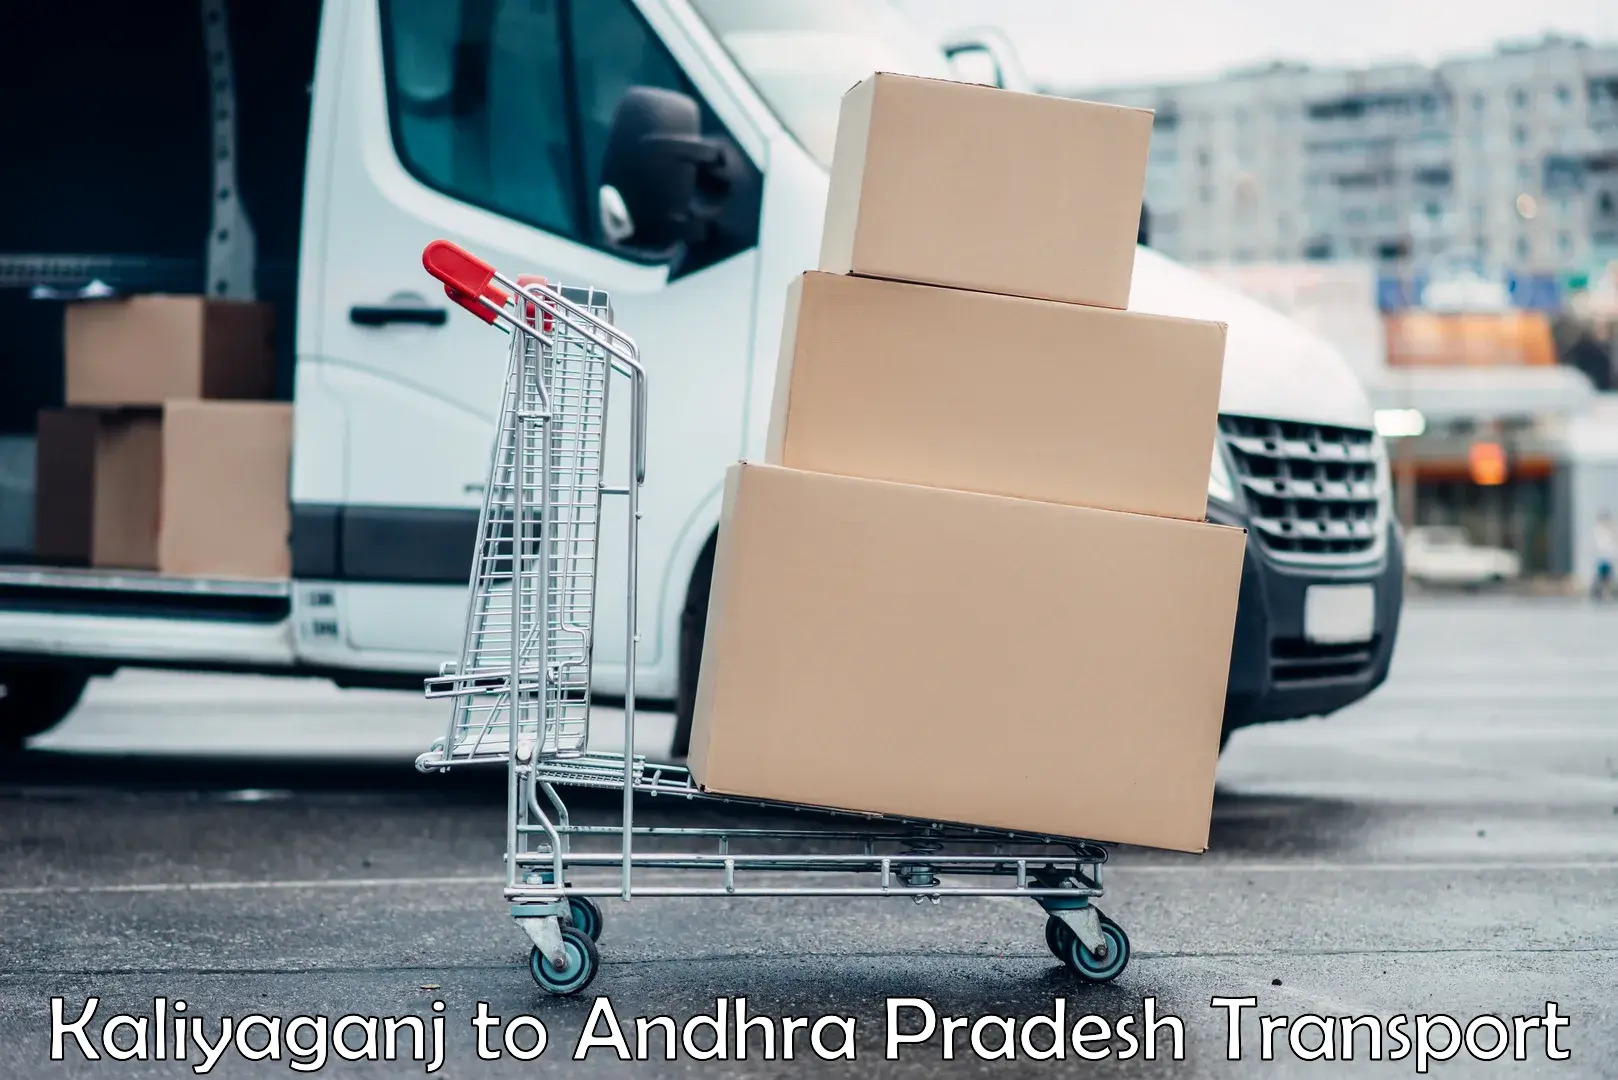 International cargo transportation services Kaliyaganj to Andhra Pradesh